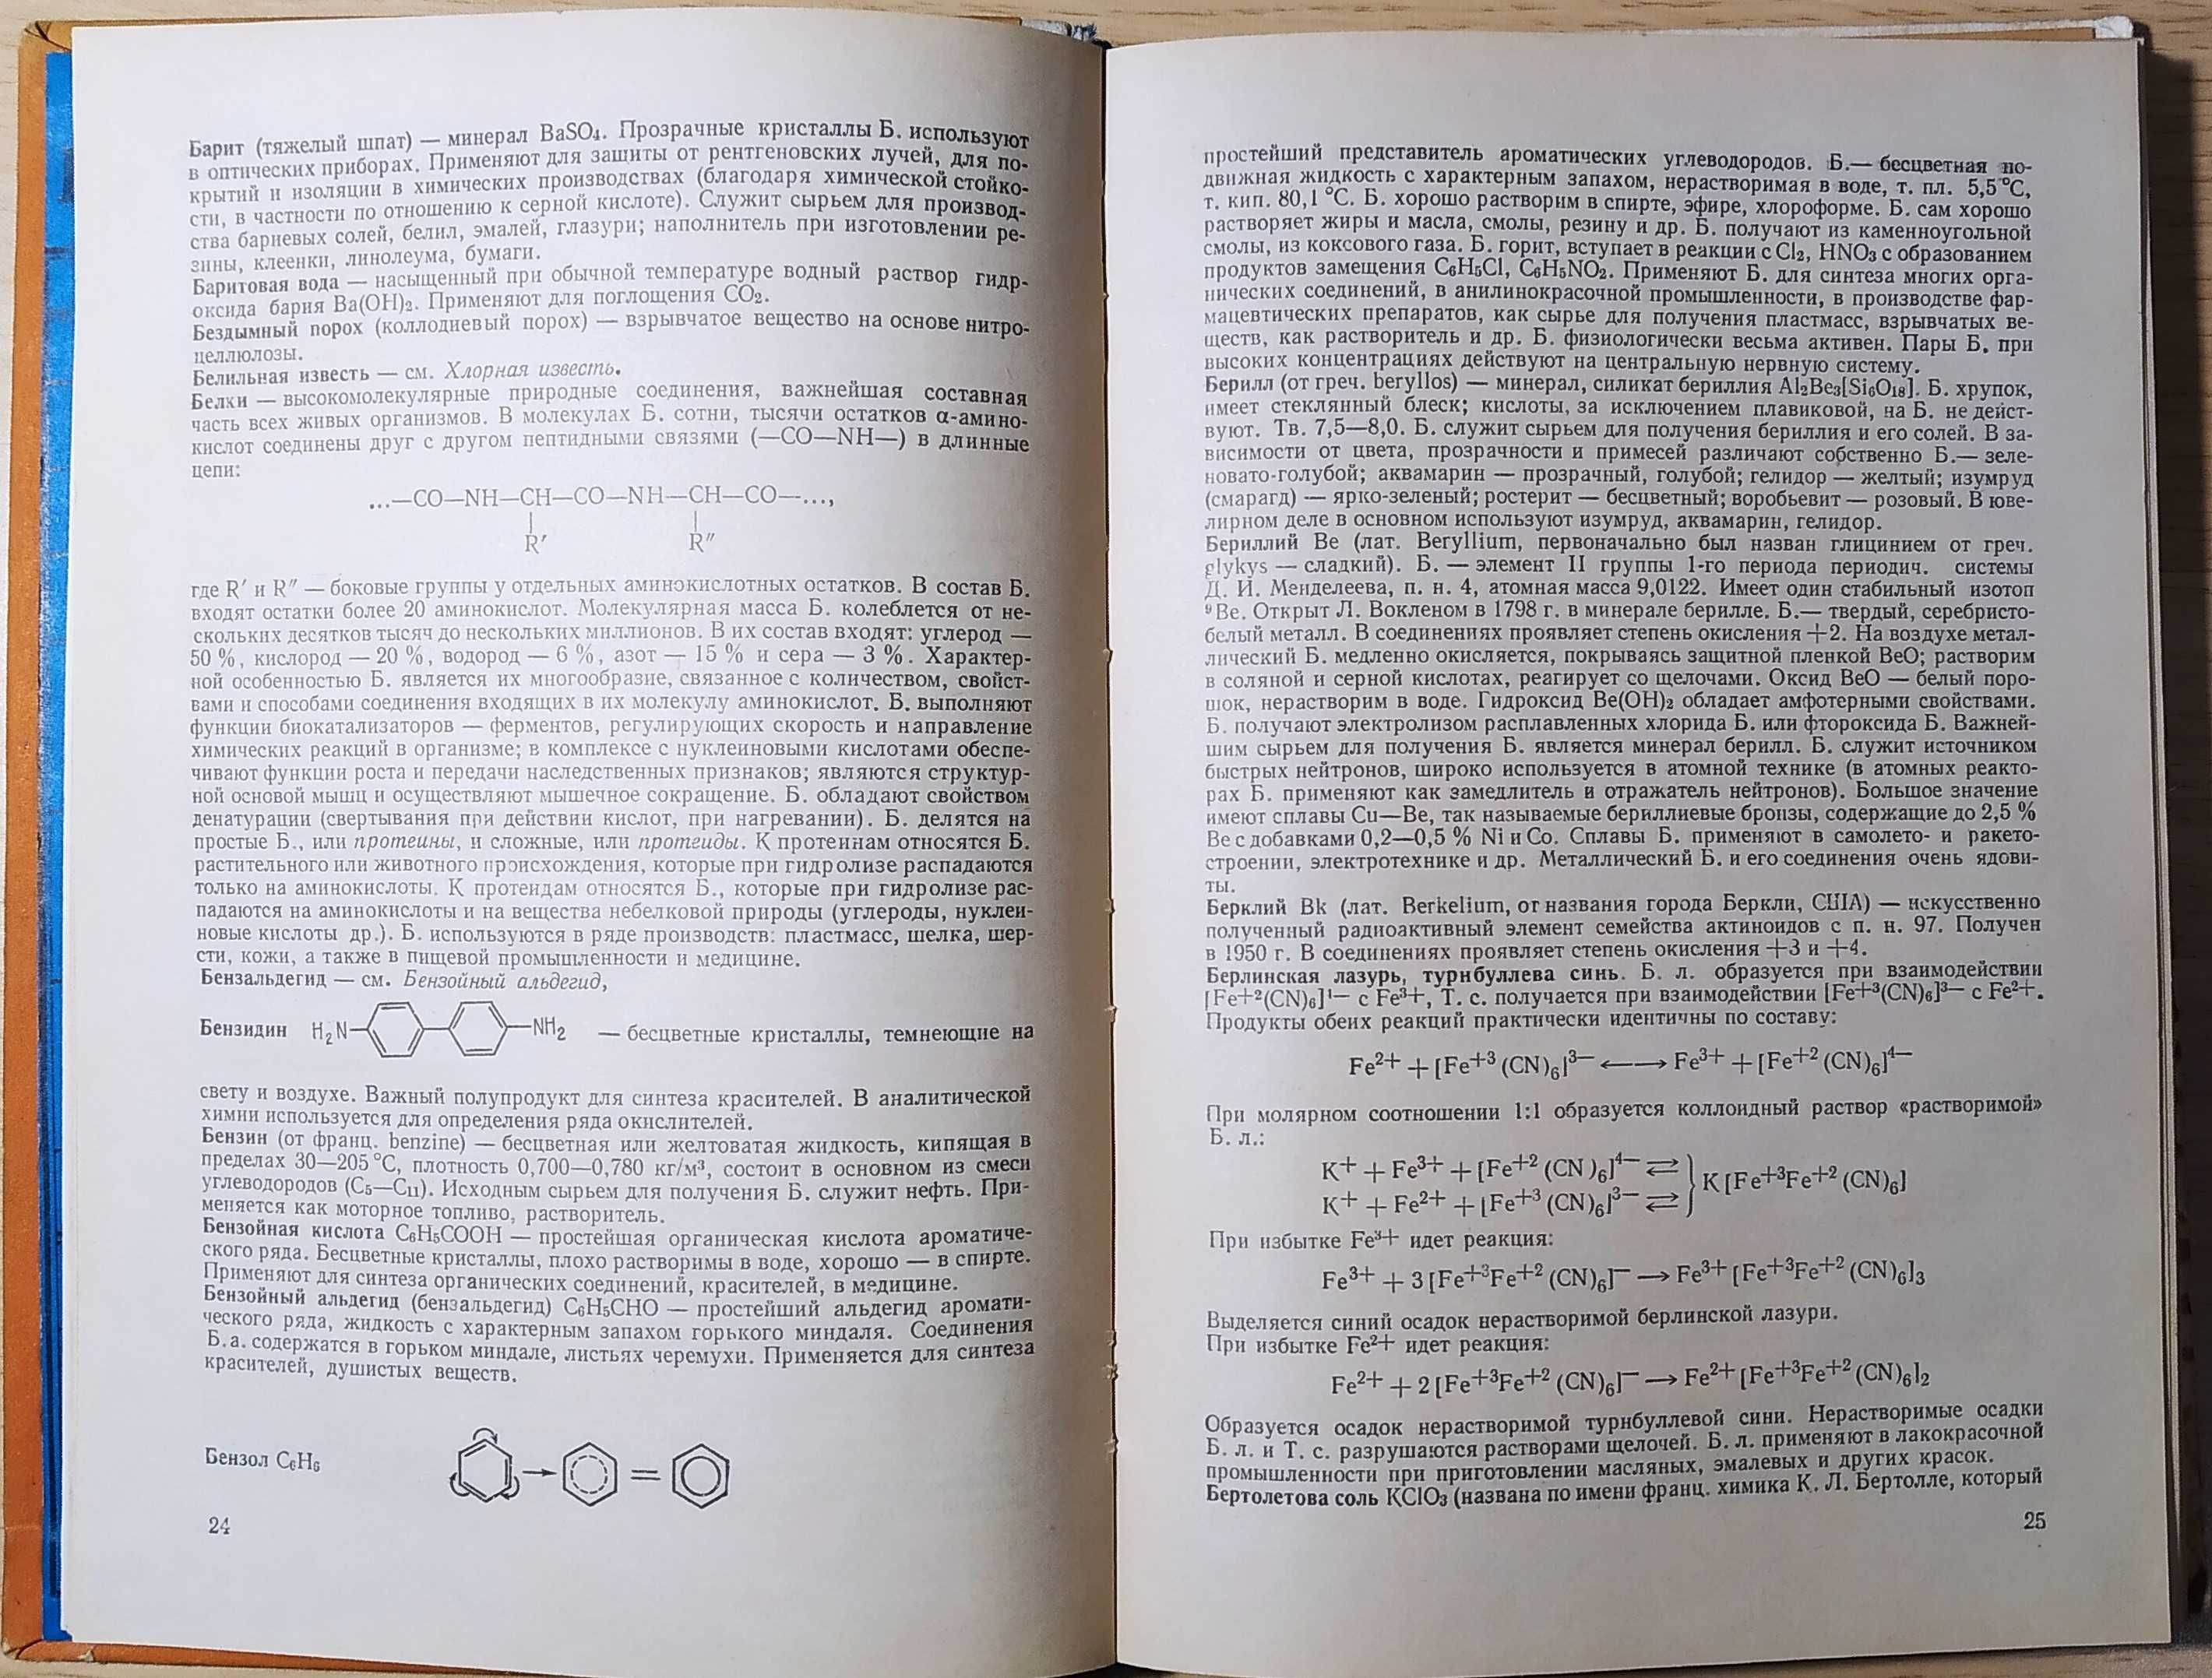 Бусев, Ефимов. Определения, понятия, термины в химии. Москва - 1981